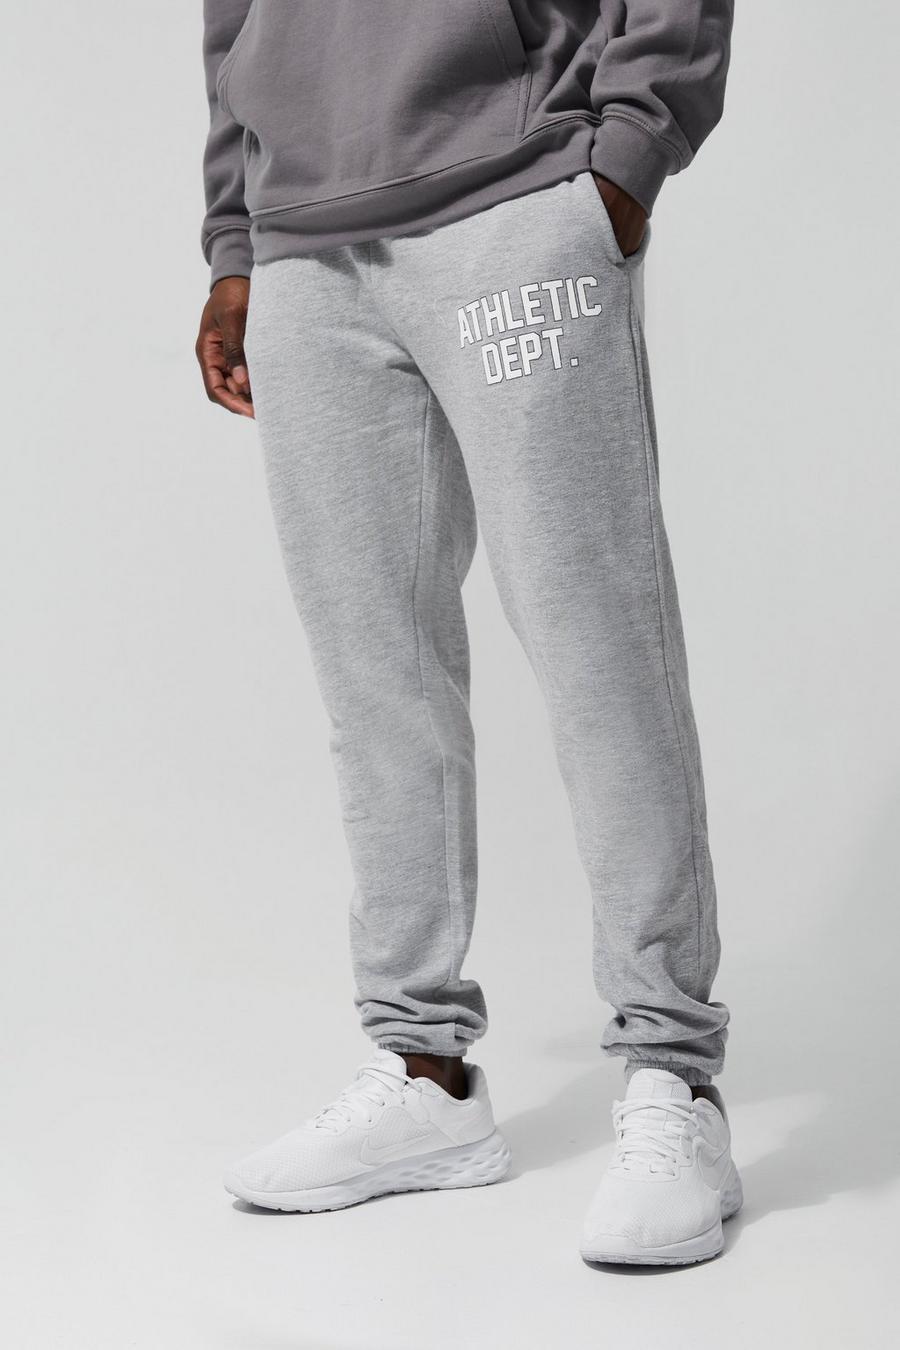 Pantalón deportivo Tall MAN Active con estampado Athletic Dept., Grey grigio